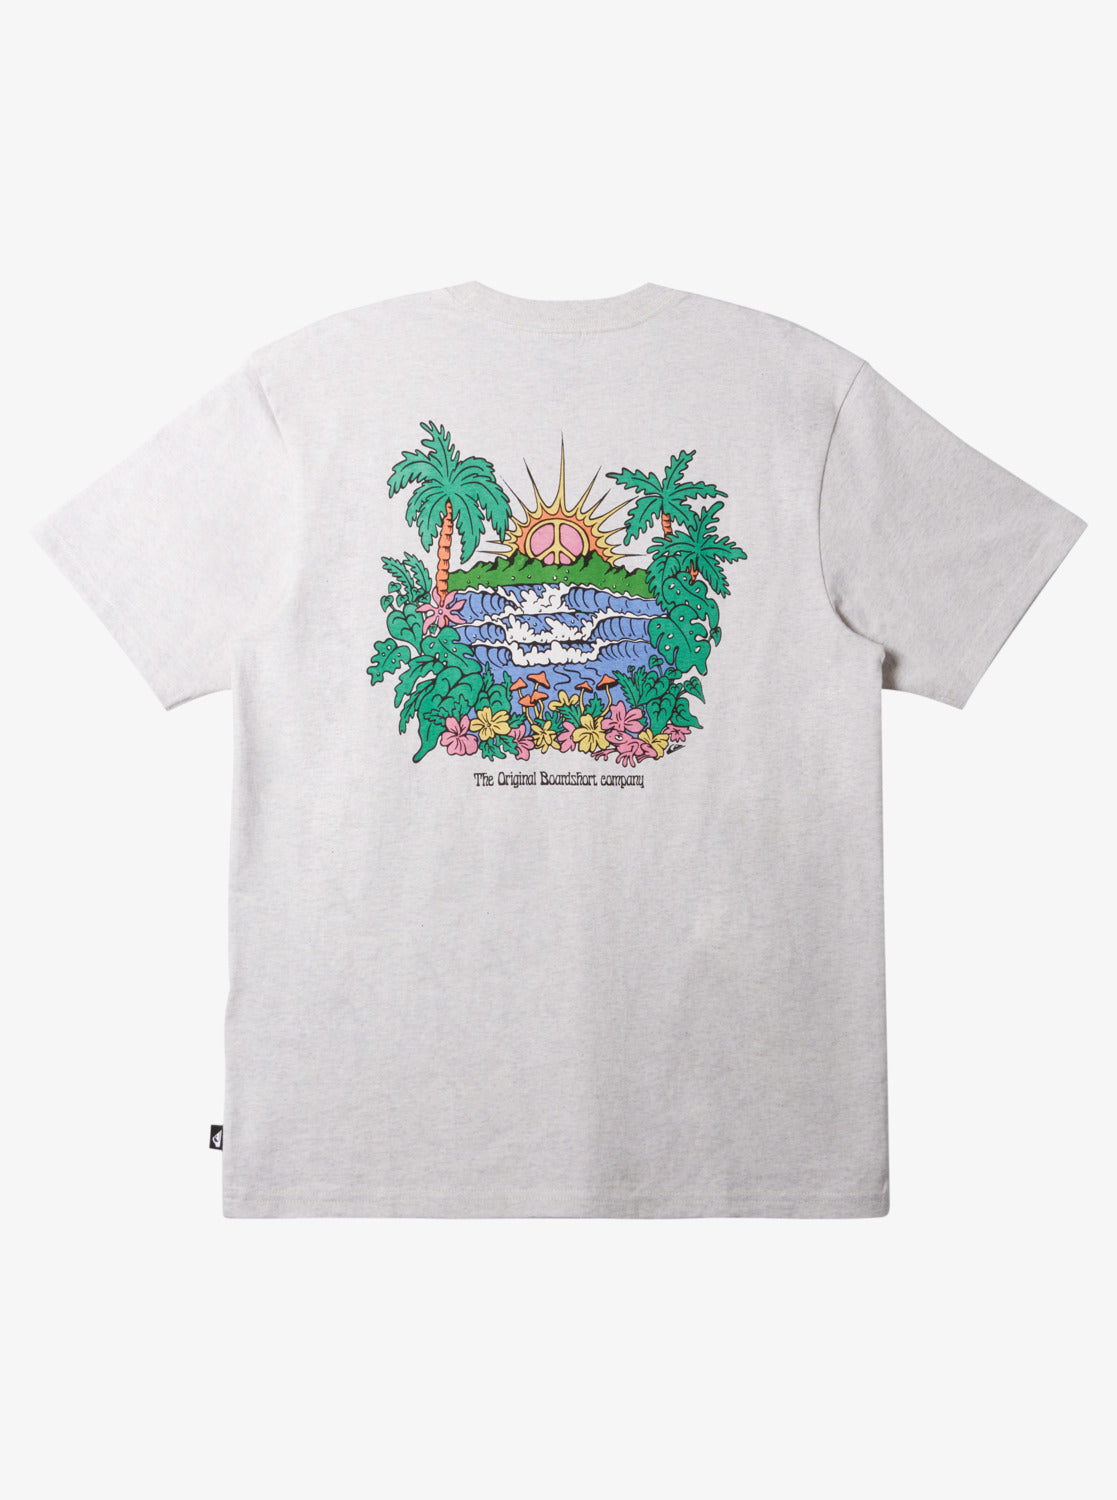 Quiksilver Island Sunrise Camiseta Hombre